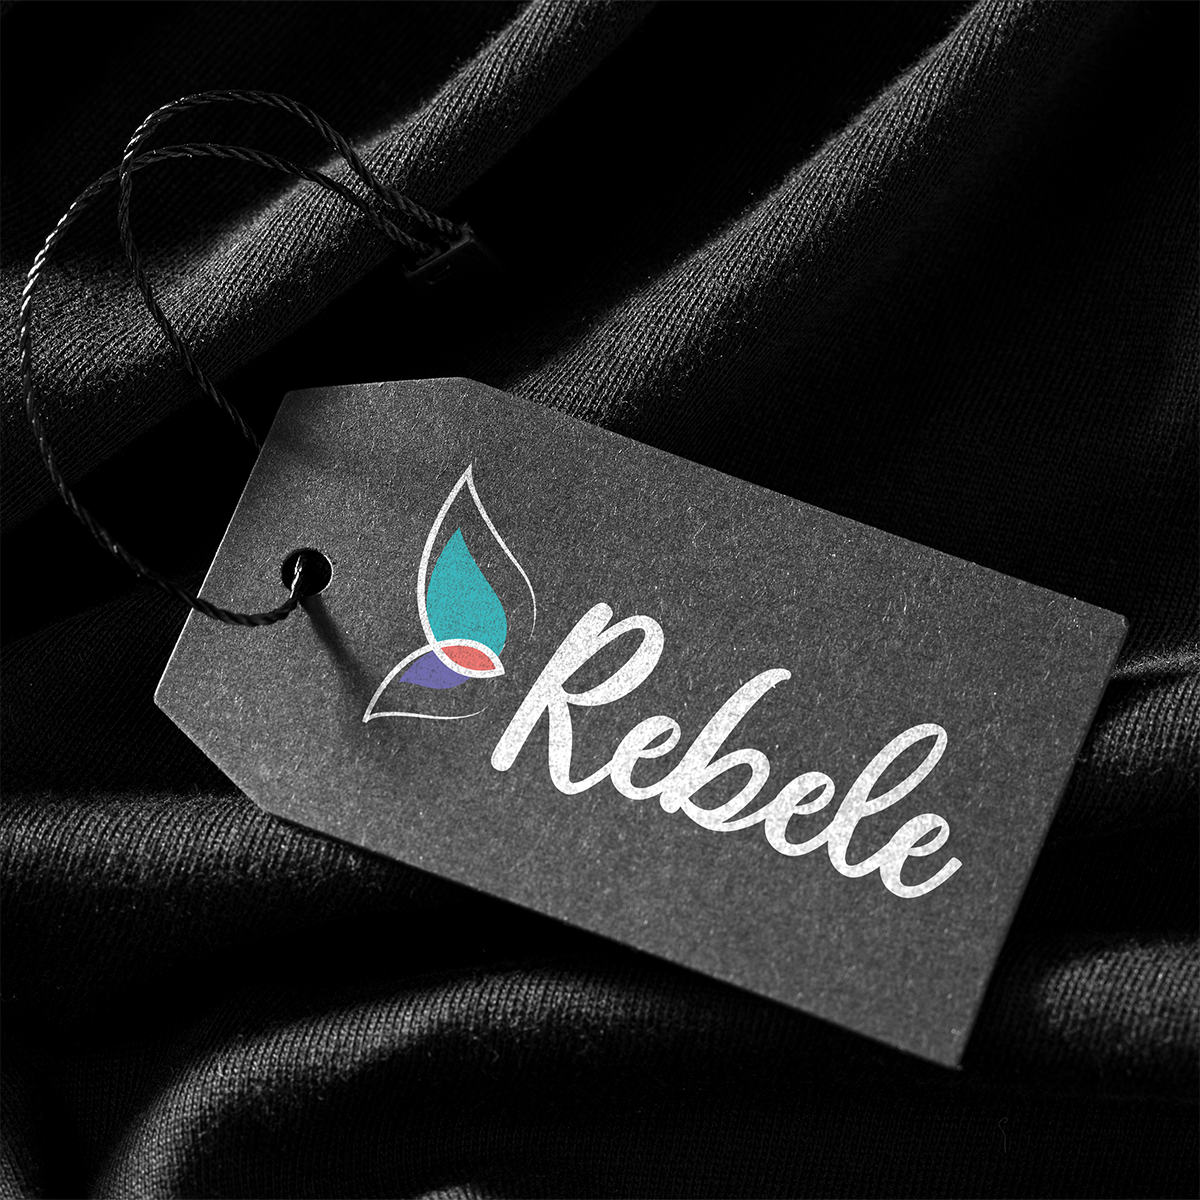 Rebele Vestuário